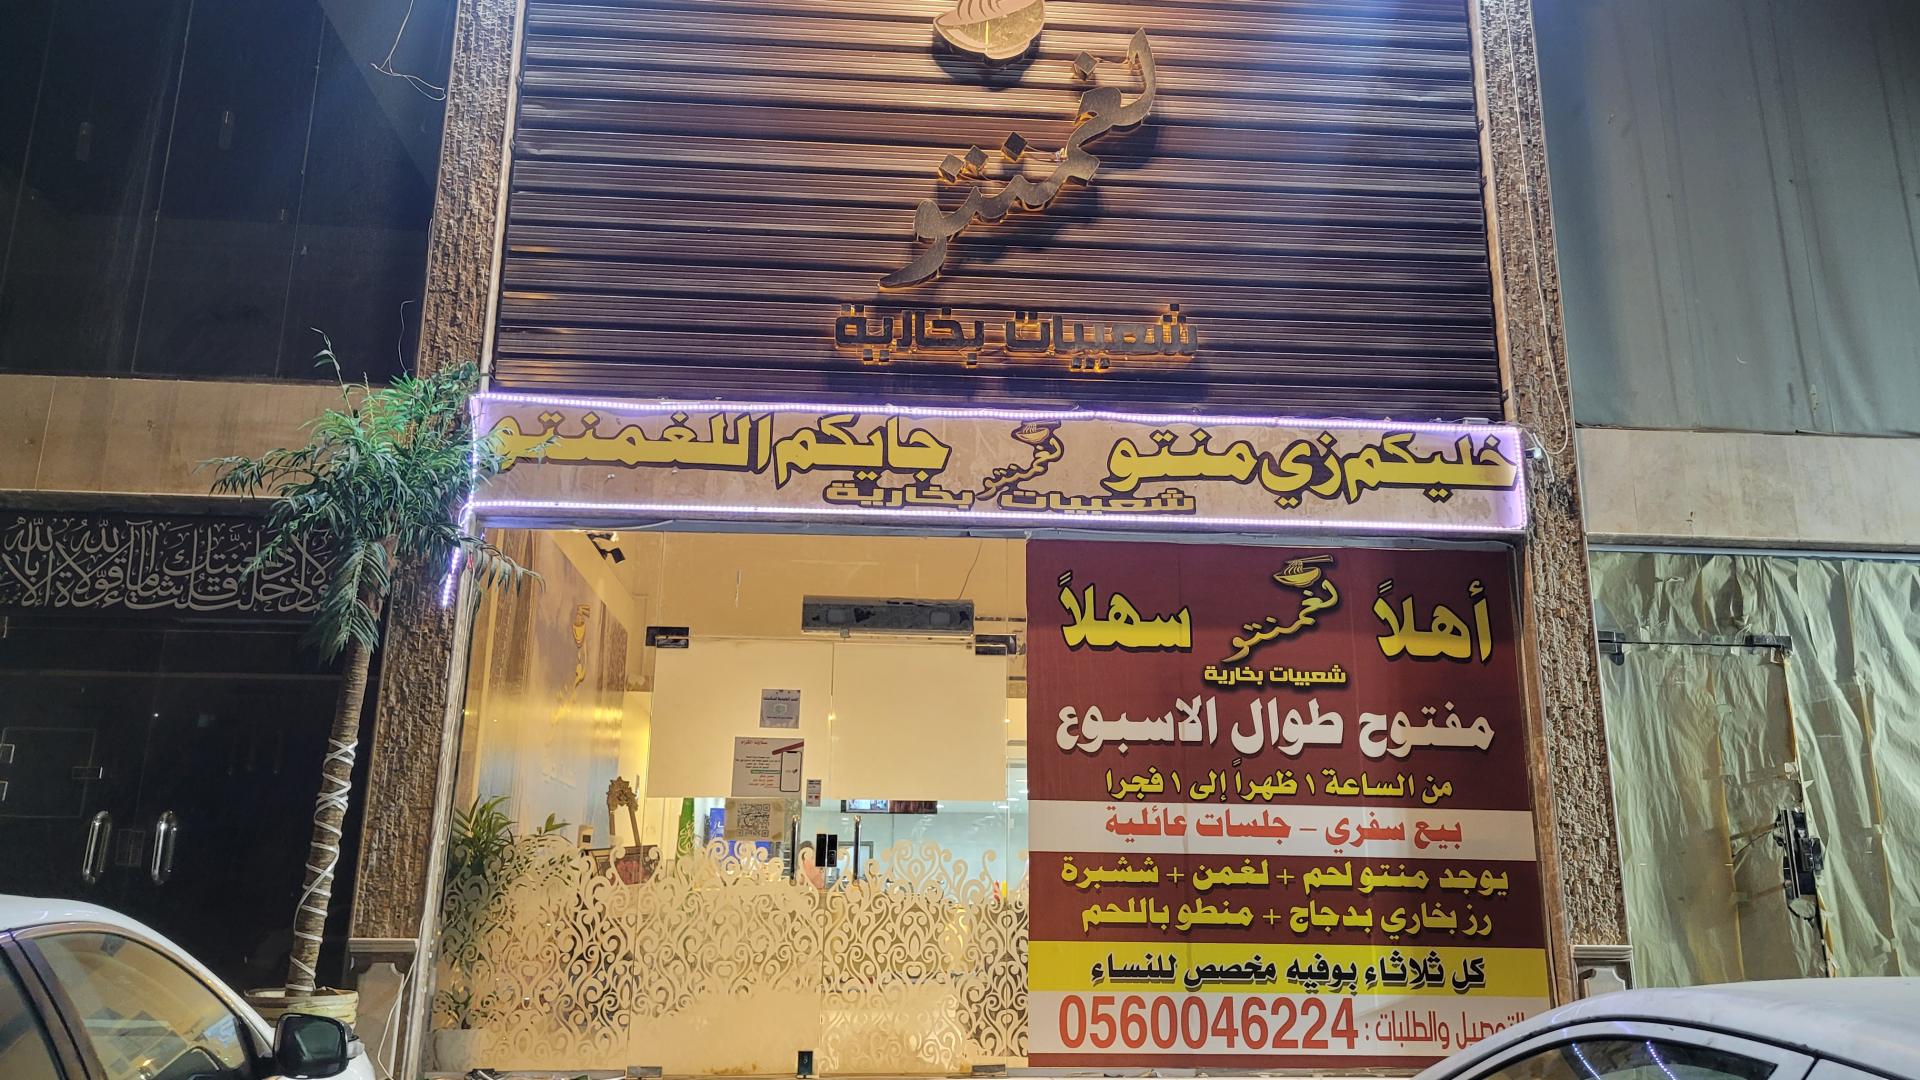 Cheese House, Makkah